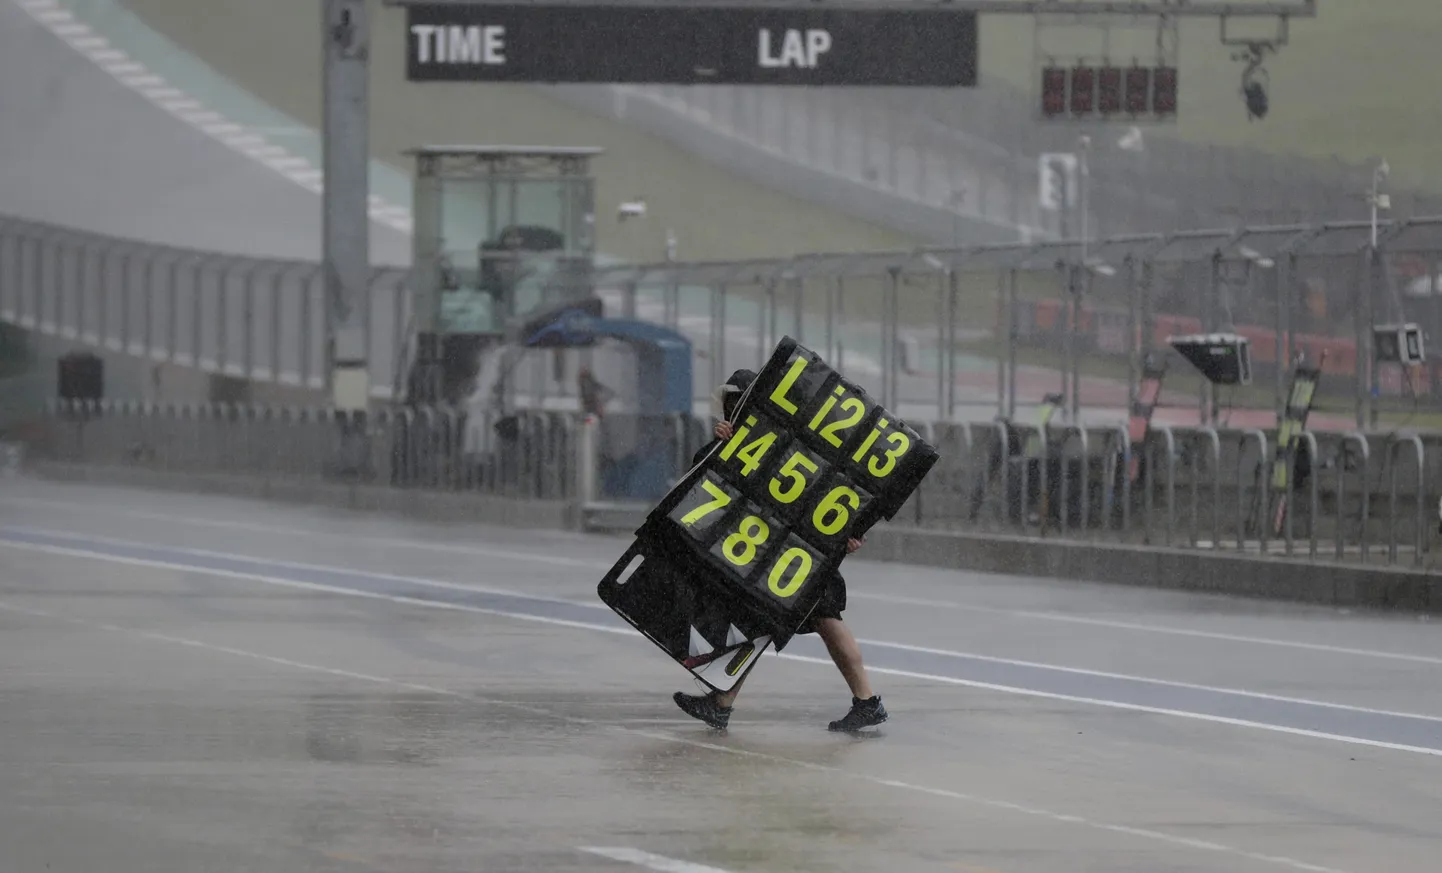 Texases Austinis tehtud foto, kus Grand Prix meeskonna liige üritab ära viia märgistust.